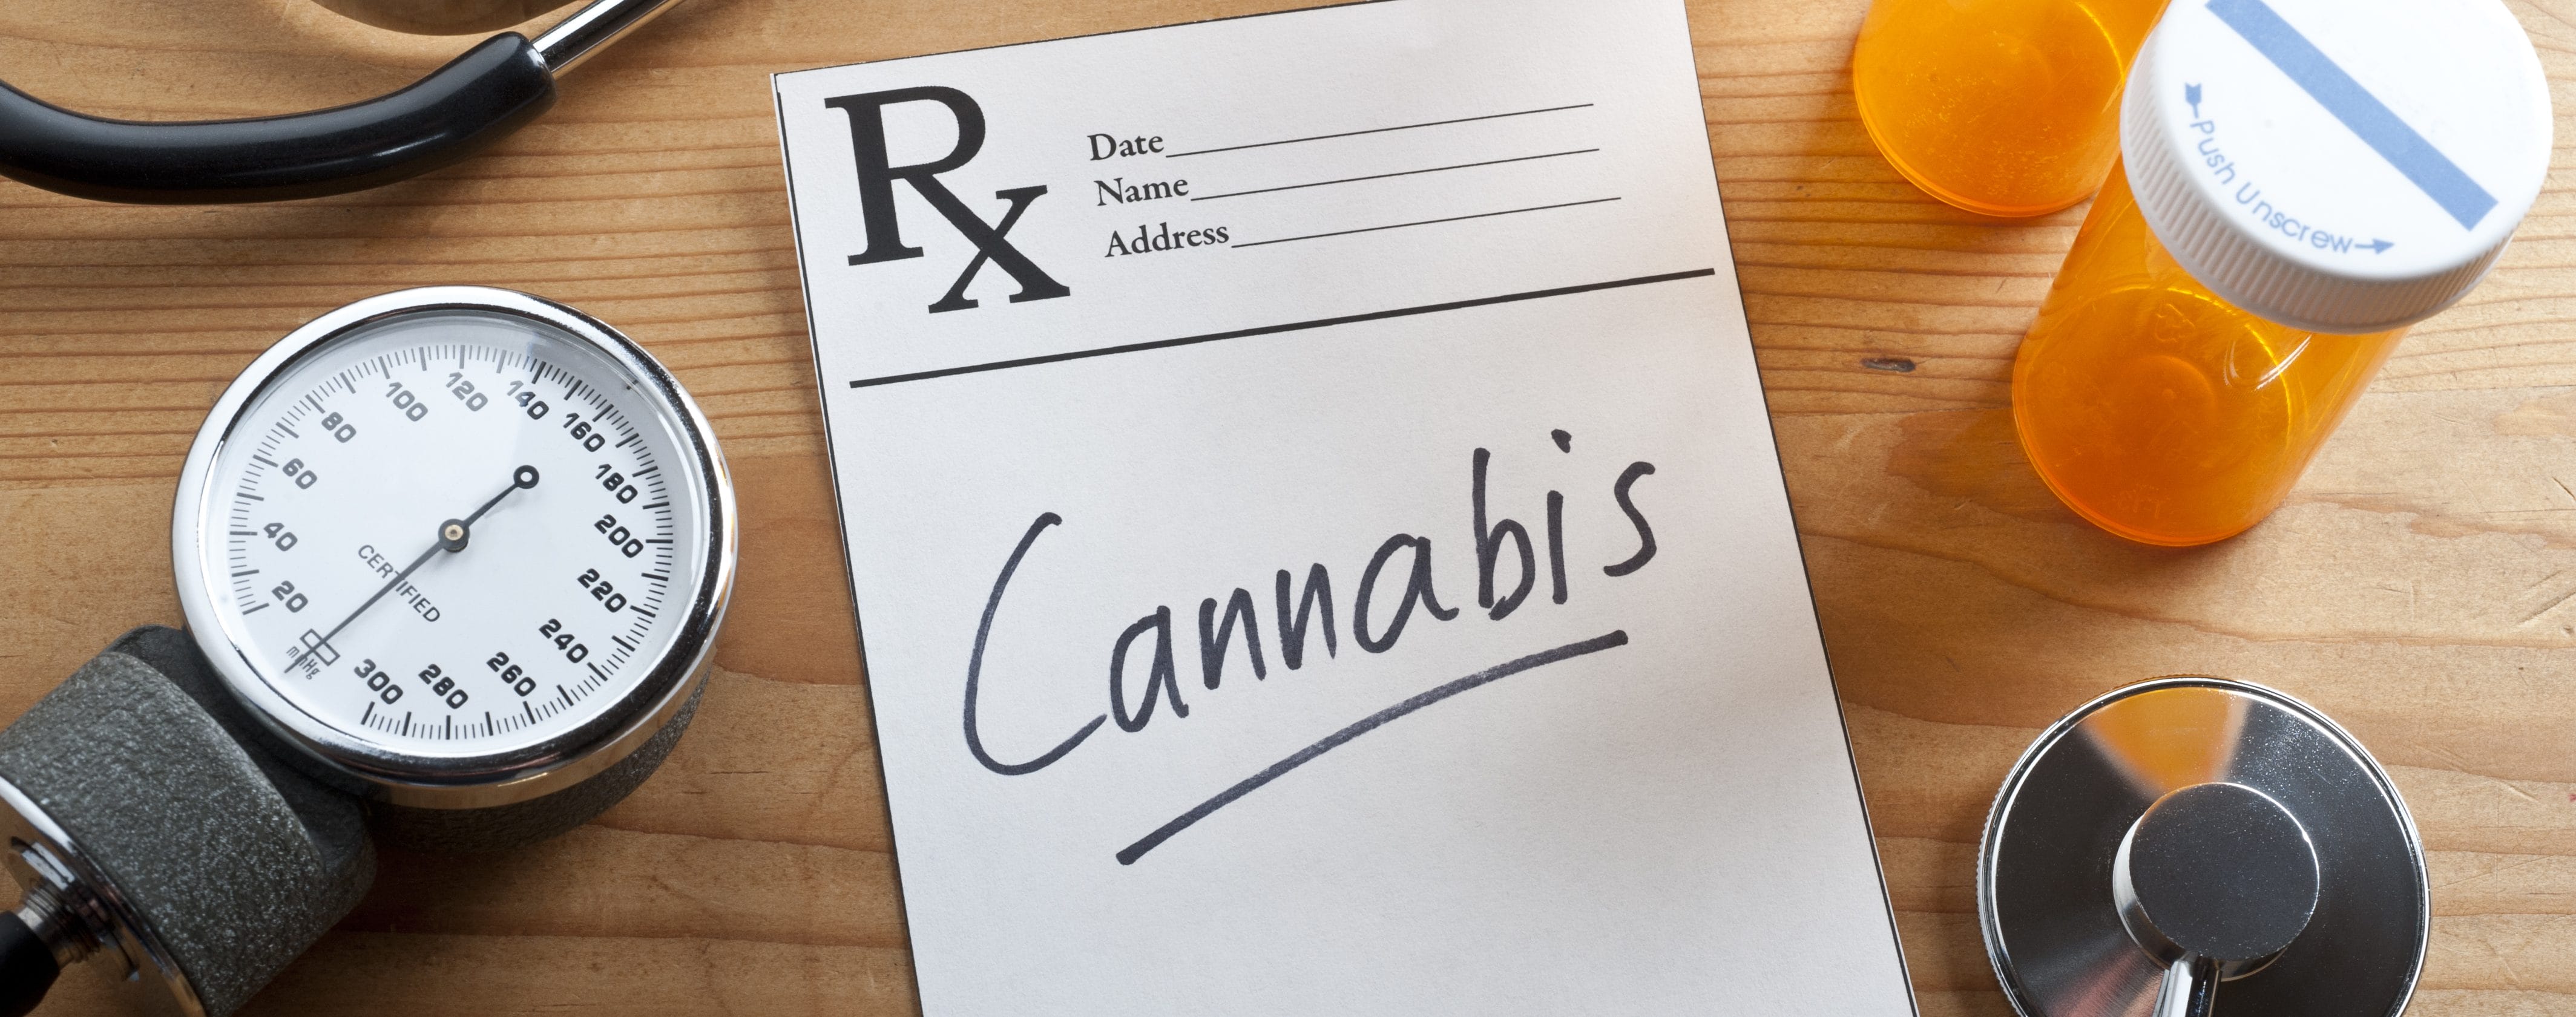 cannabis prescription